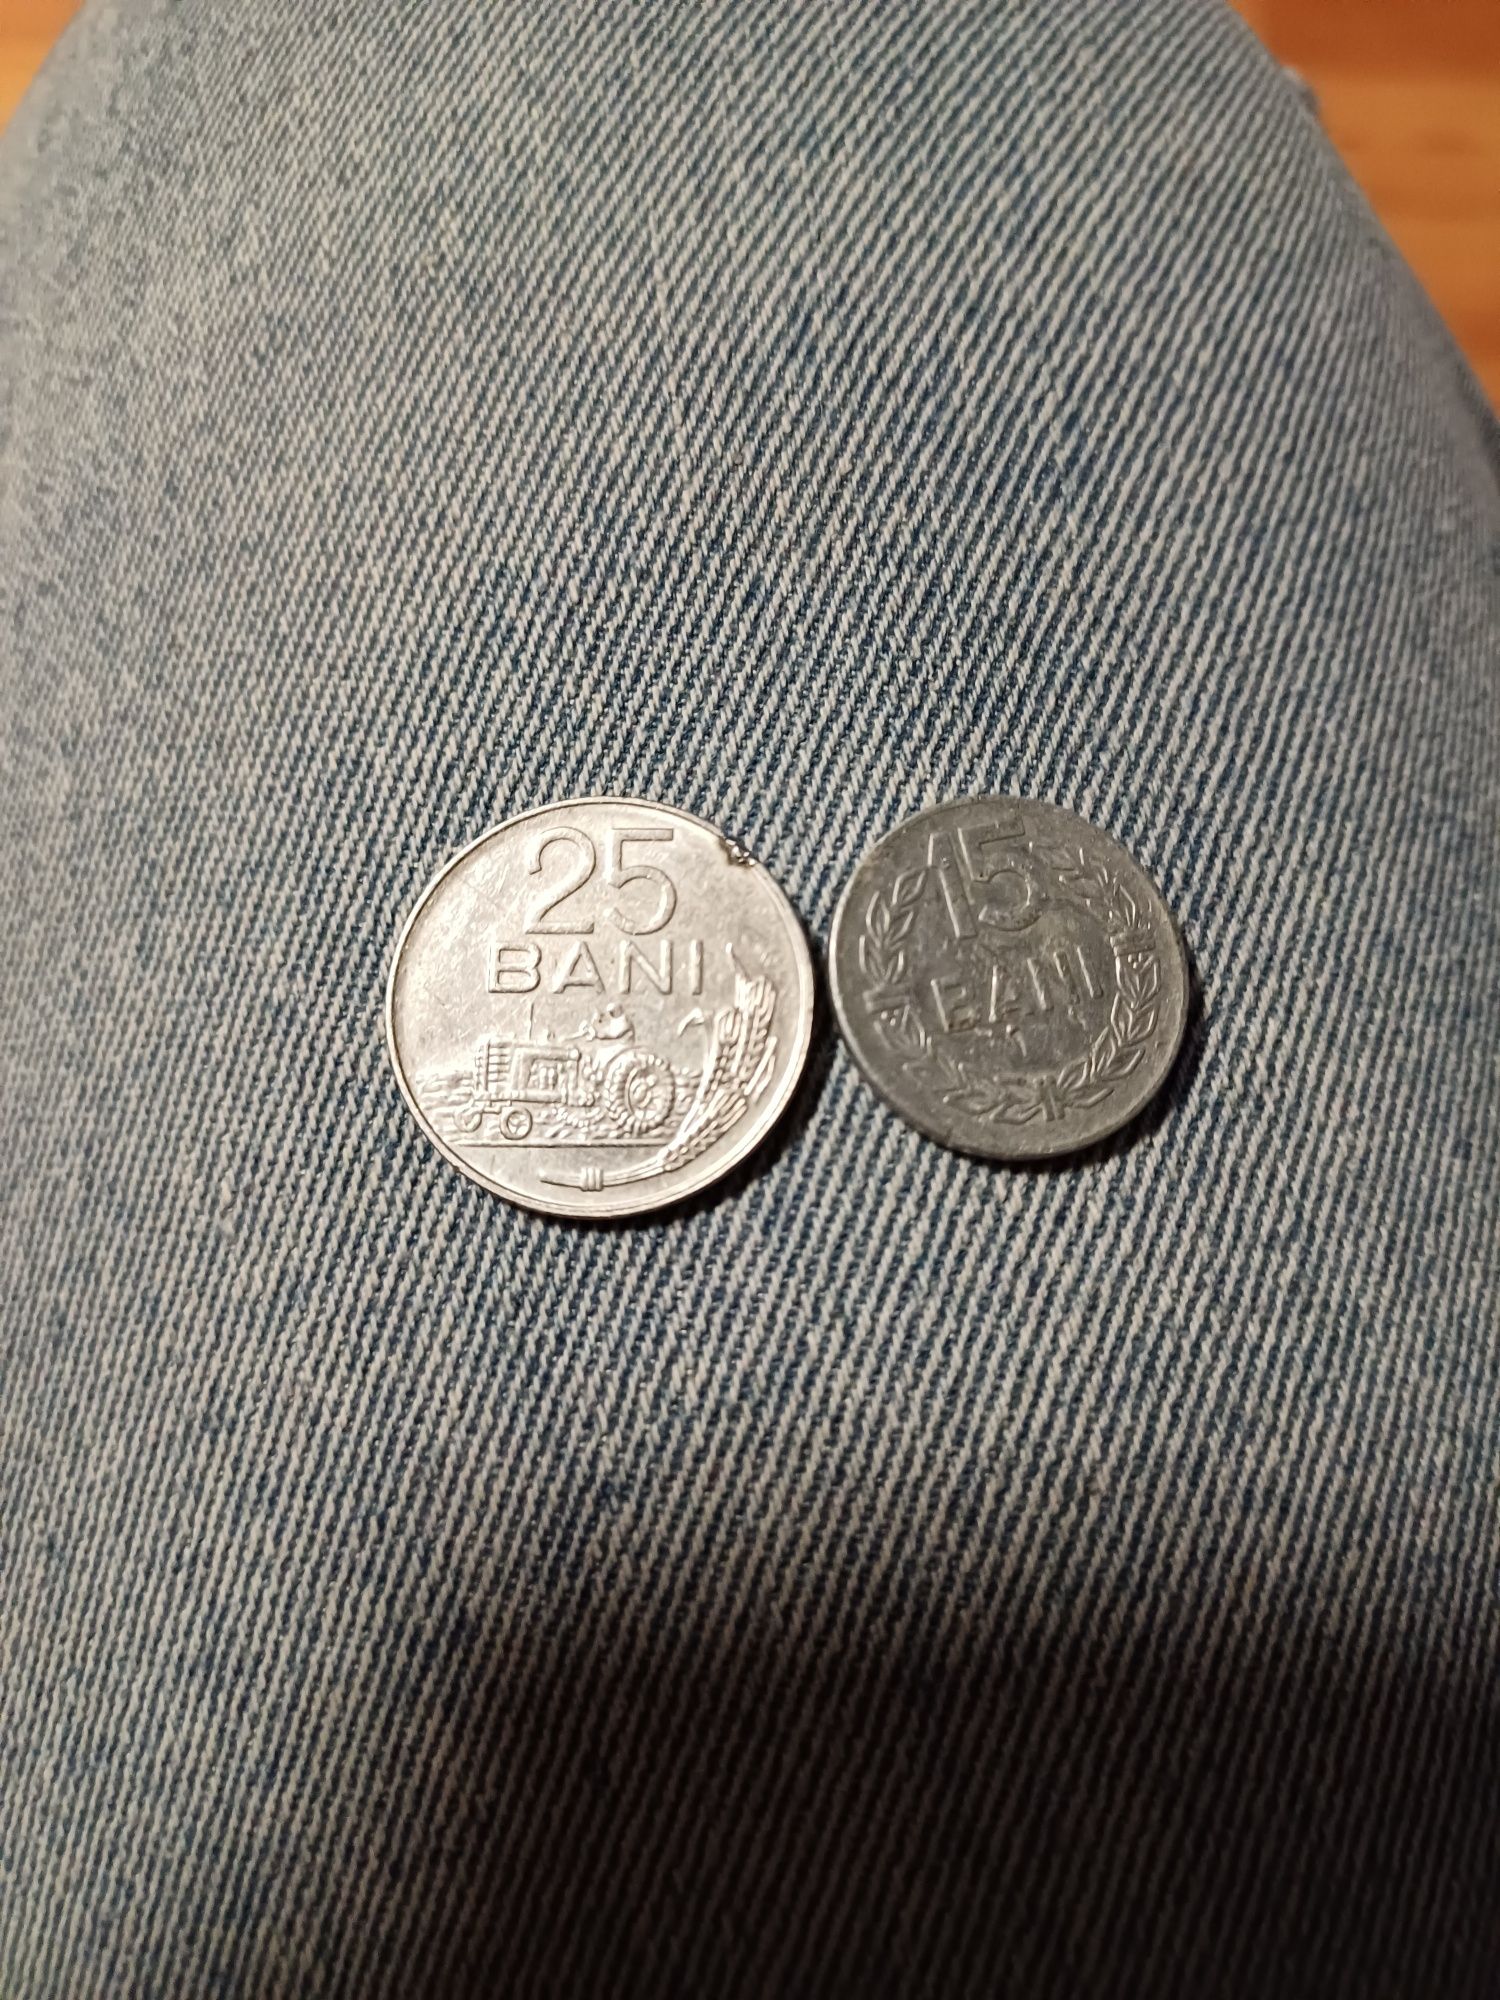 Vand doua monede una 25 bani 1966 si una de 15 bani din 1975